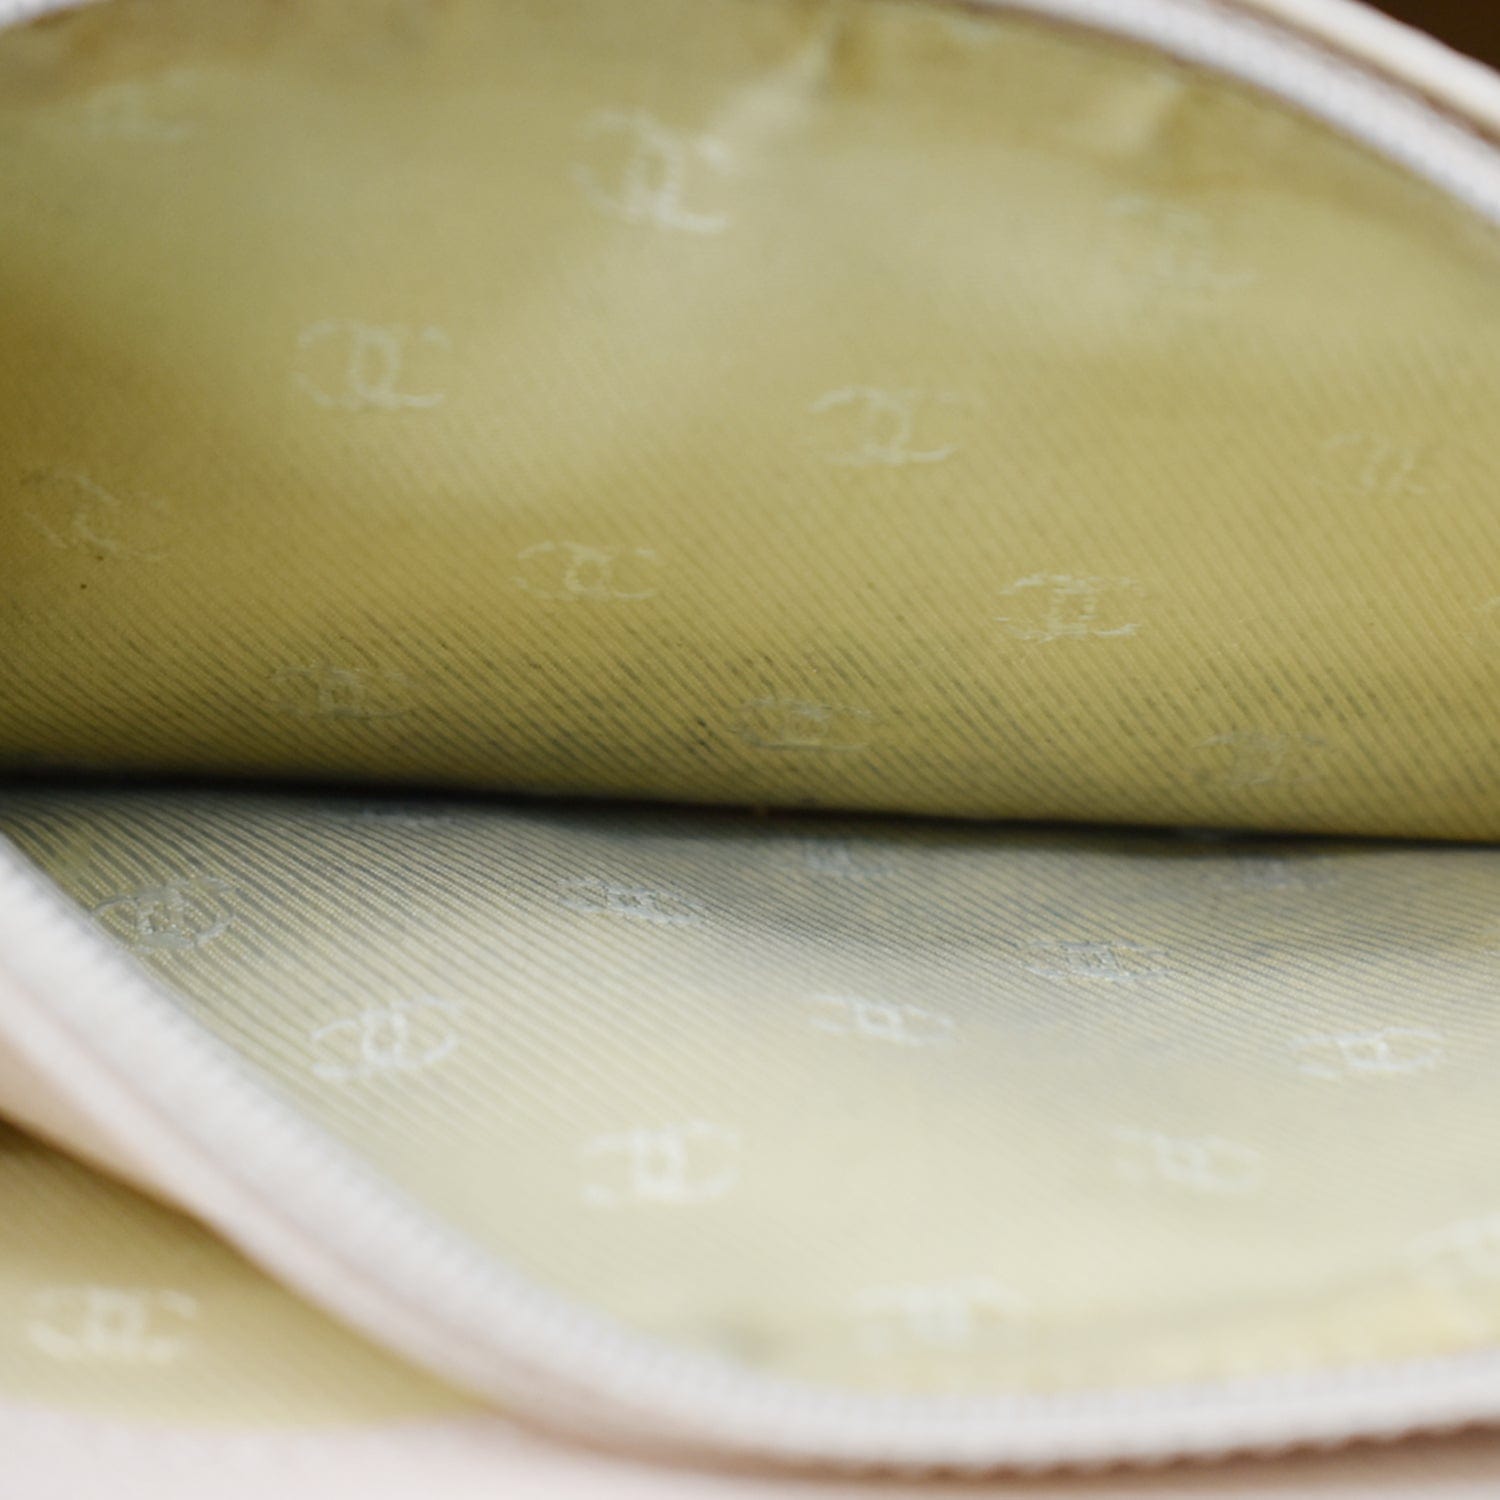 CHANEL Bi-fold Wallet Double hook COCO mark Leather Light green